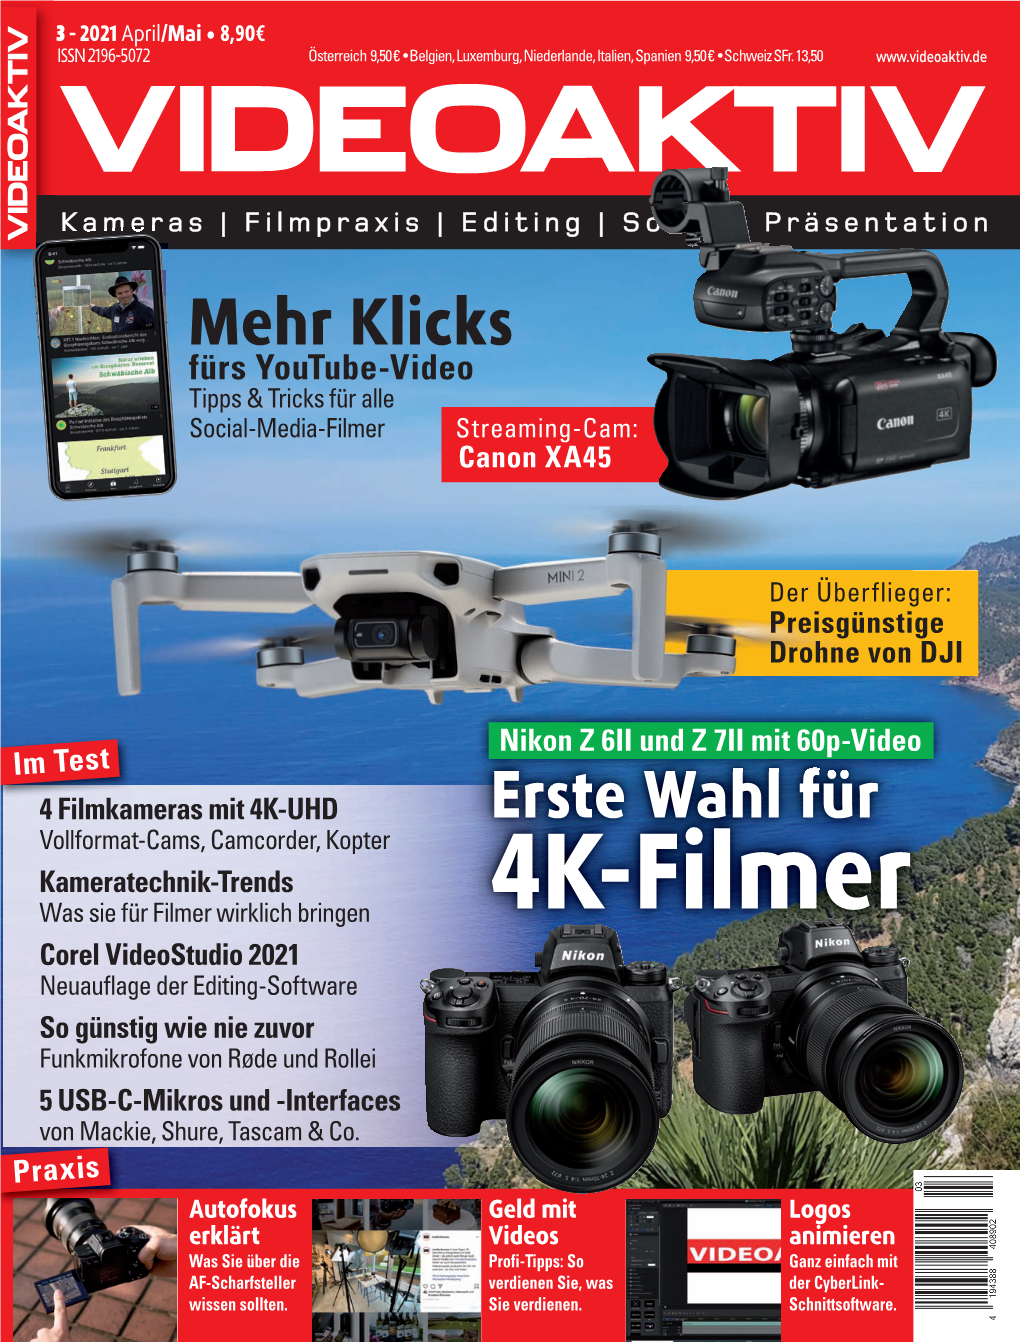 4K-Filmer Corel Videostudio 2021 Neuauflage Der Editing-Software